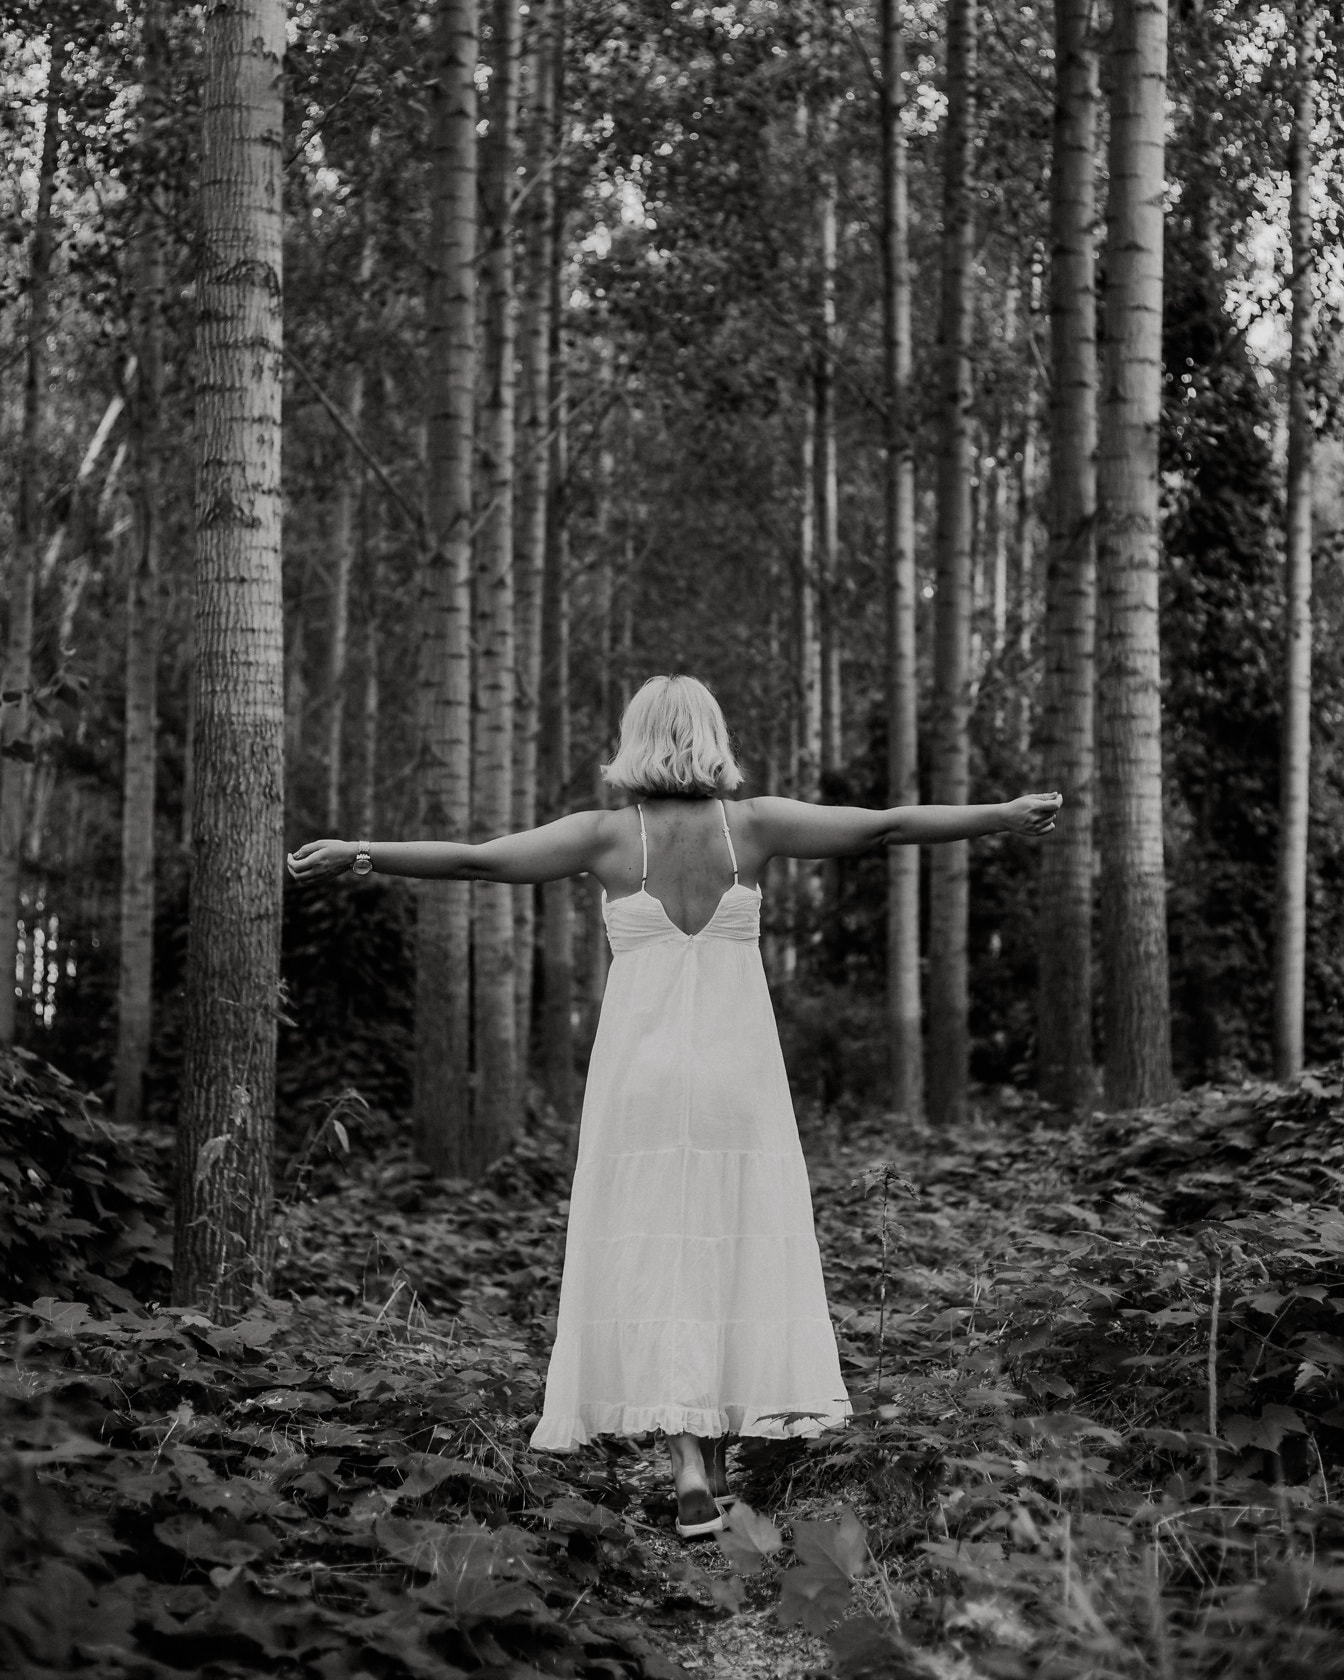 Femme joyeuse en robe blanche dans la photographie monochrome de forêt